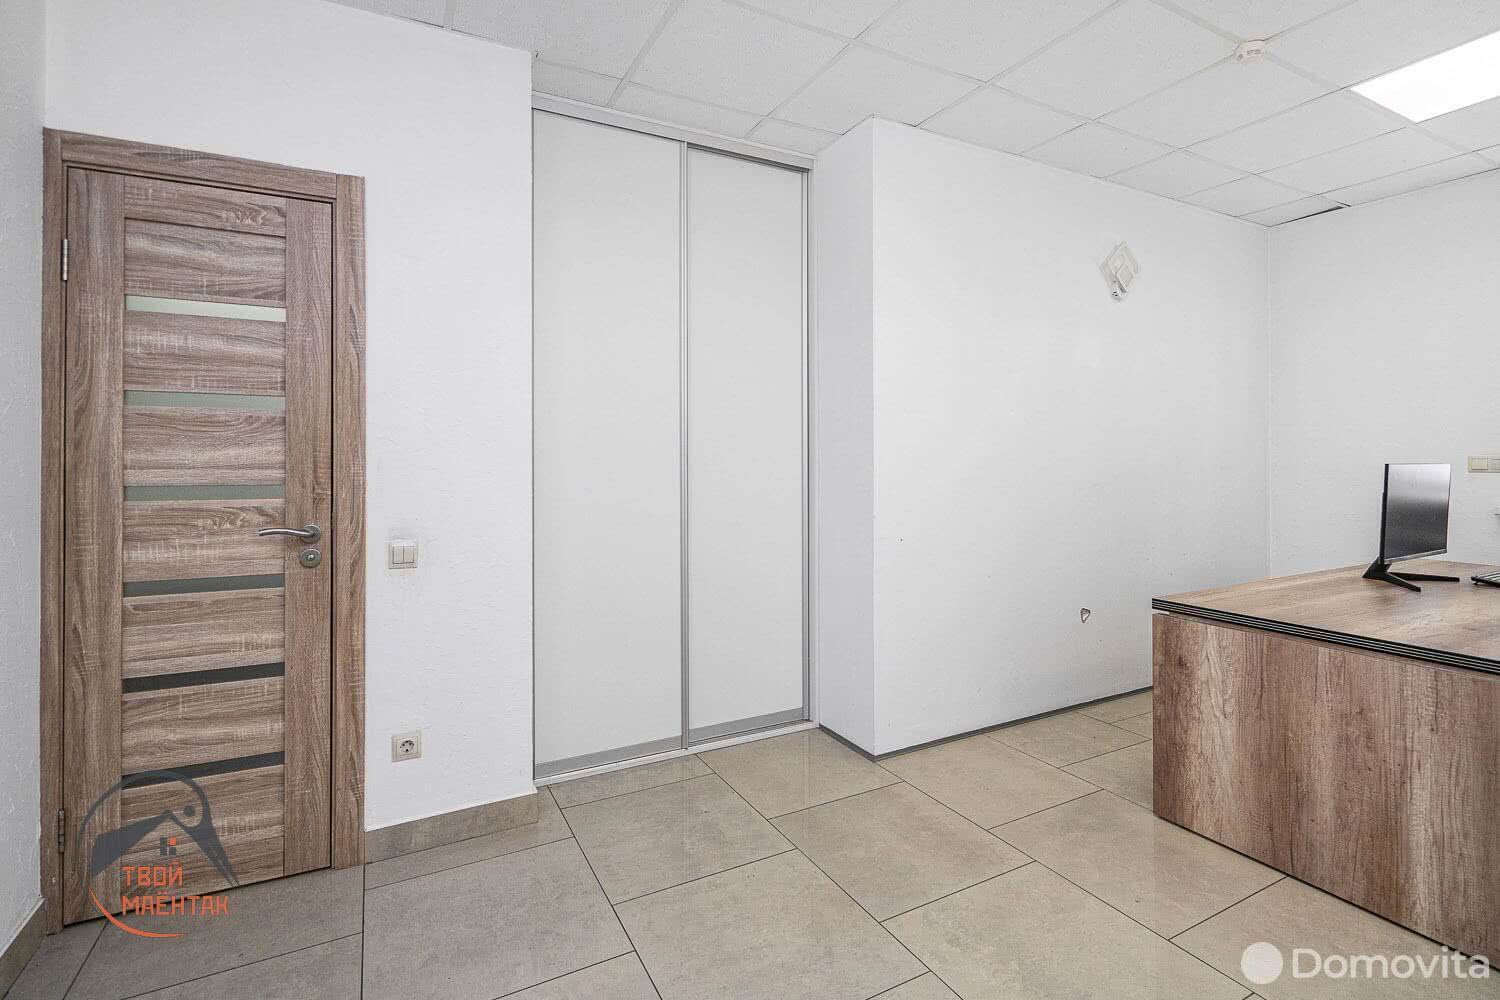 Снять офис на ул. Веры Хоружей, д. 5 в Минске, 1000BYN, код 11922 - фото 3